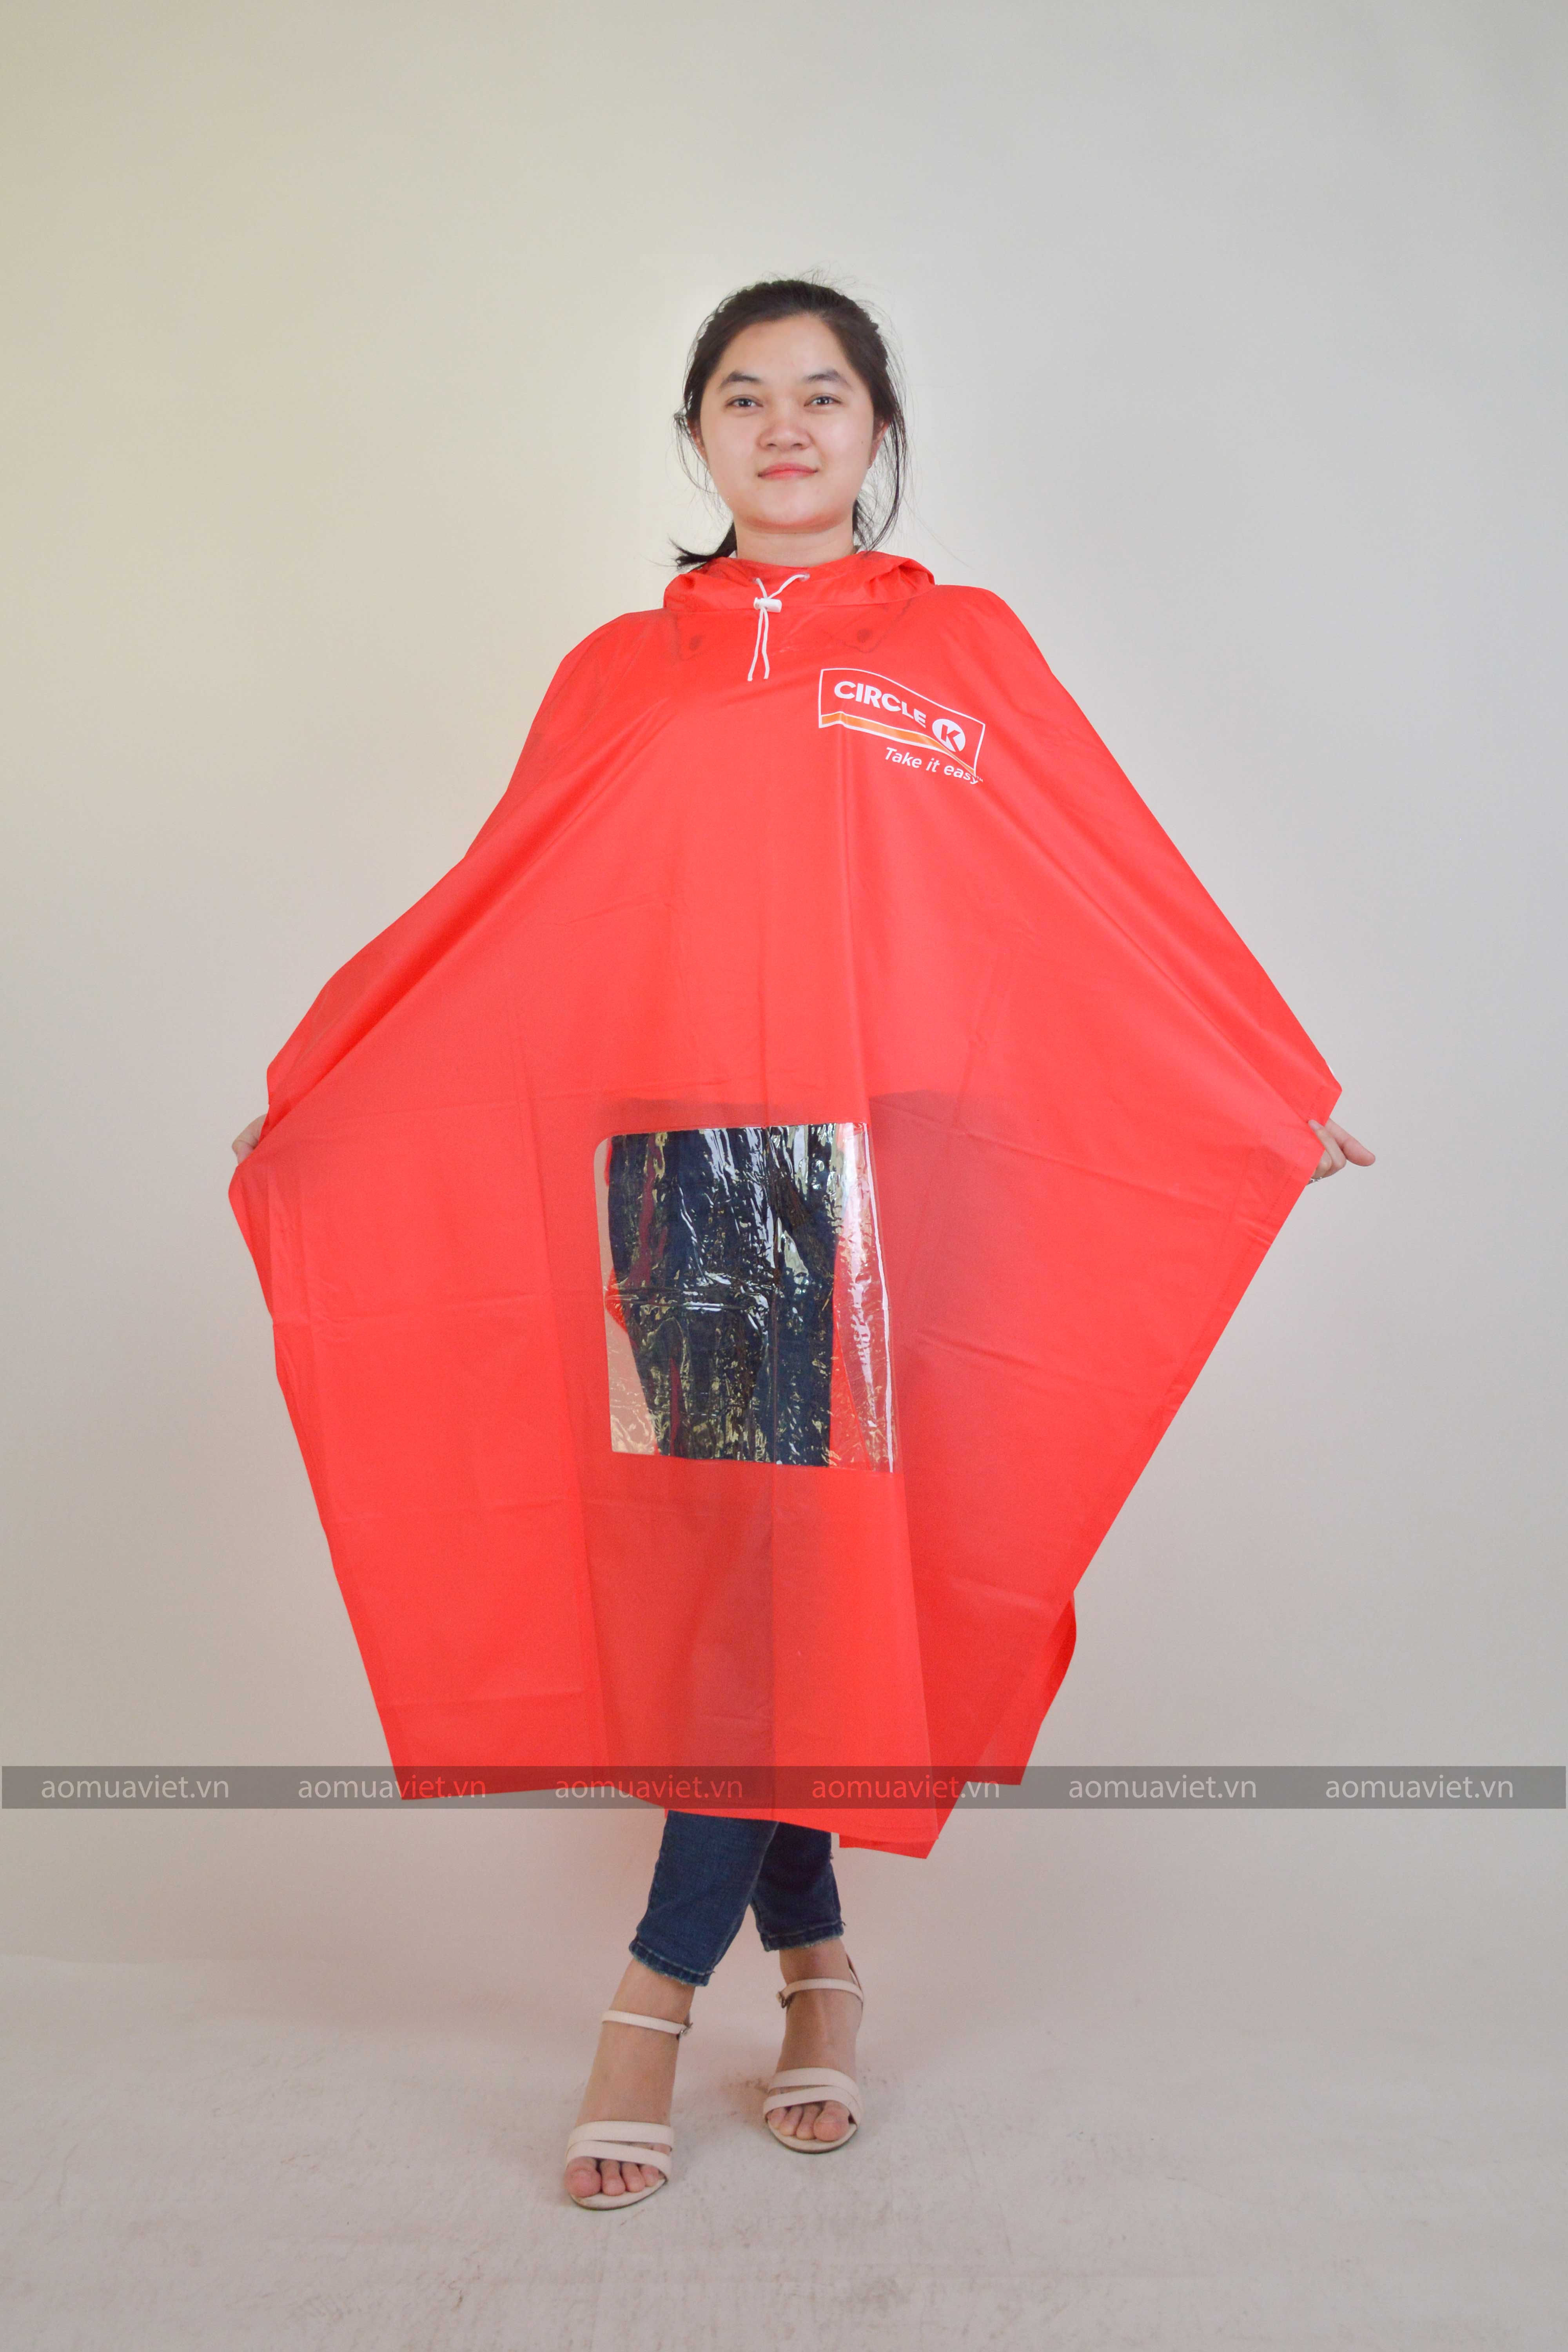 10 Chuyên sản xuất áo mưa quà tặng, khuyến mãi, quảng cáo thương hiệu uy tín